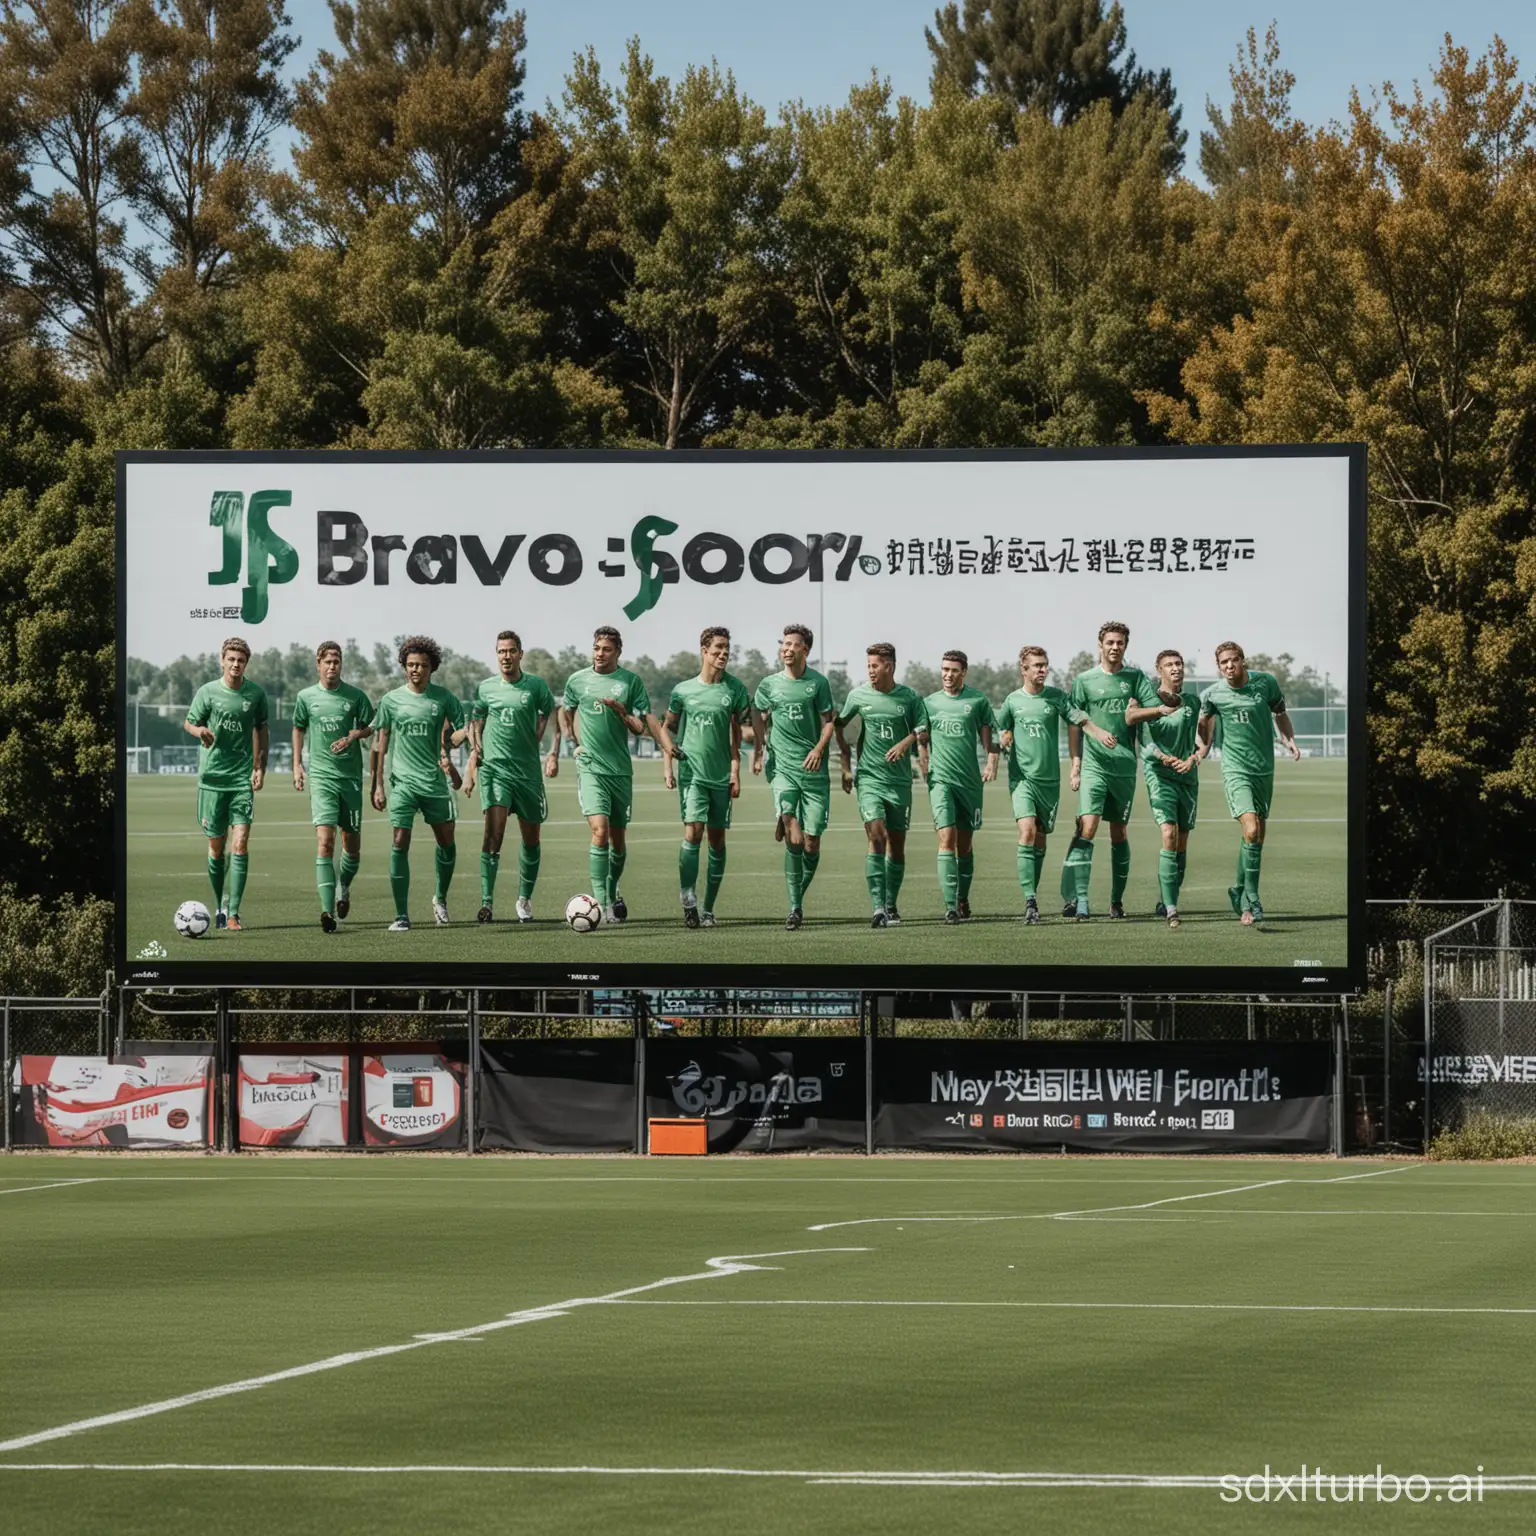 Puedes crear 8 jugadores de fútbol en un campo de fútbol  con un cartel publicitario que ponga en lo alto el nombre de JS BRAVO SPORT